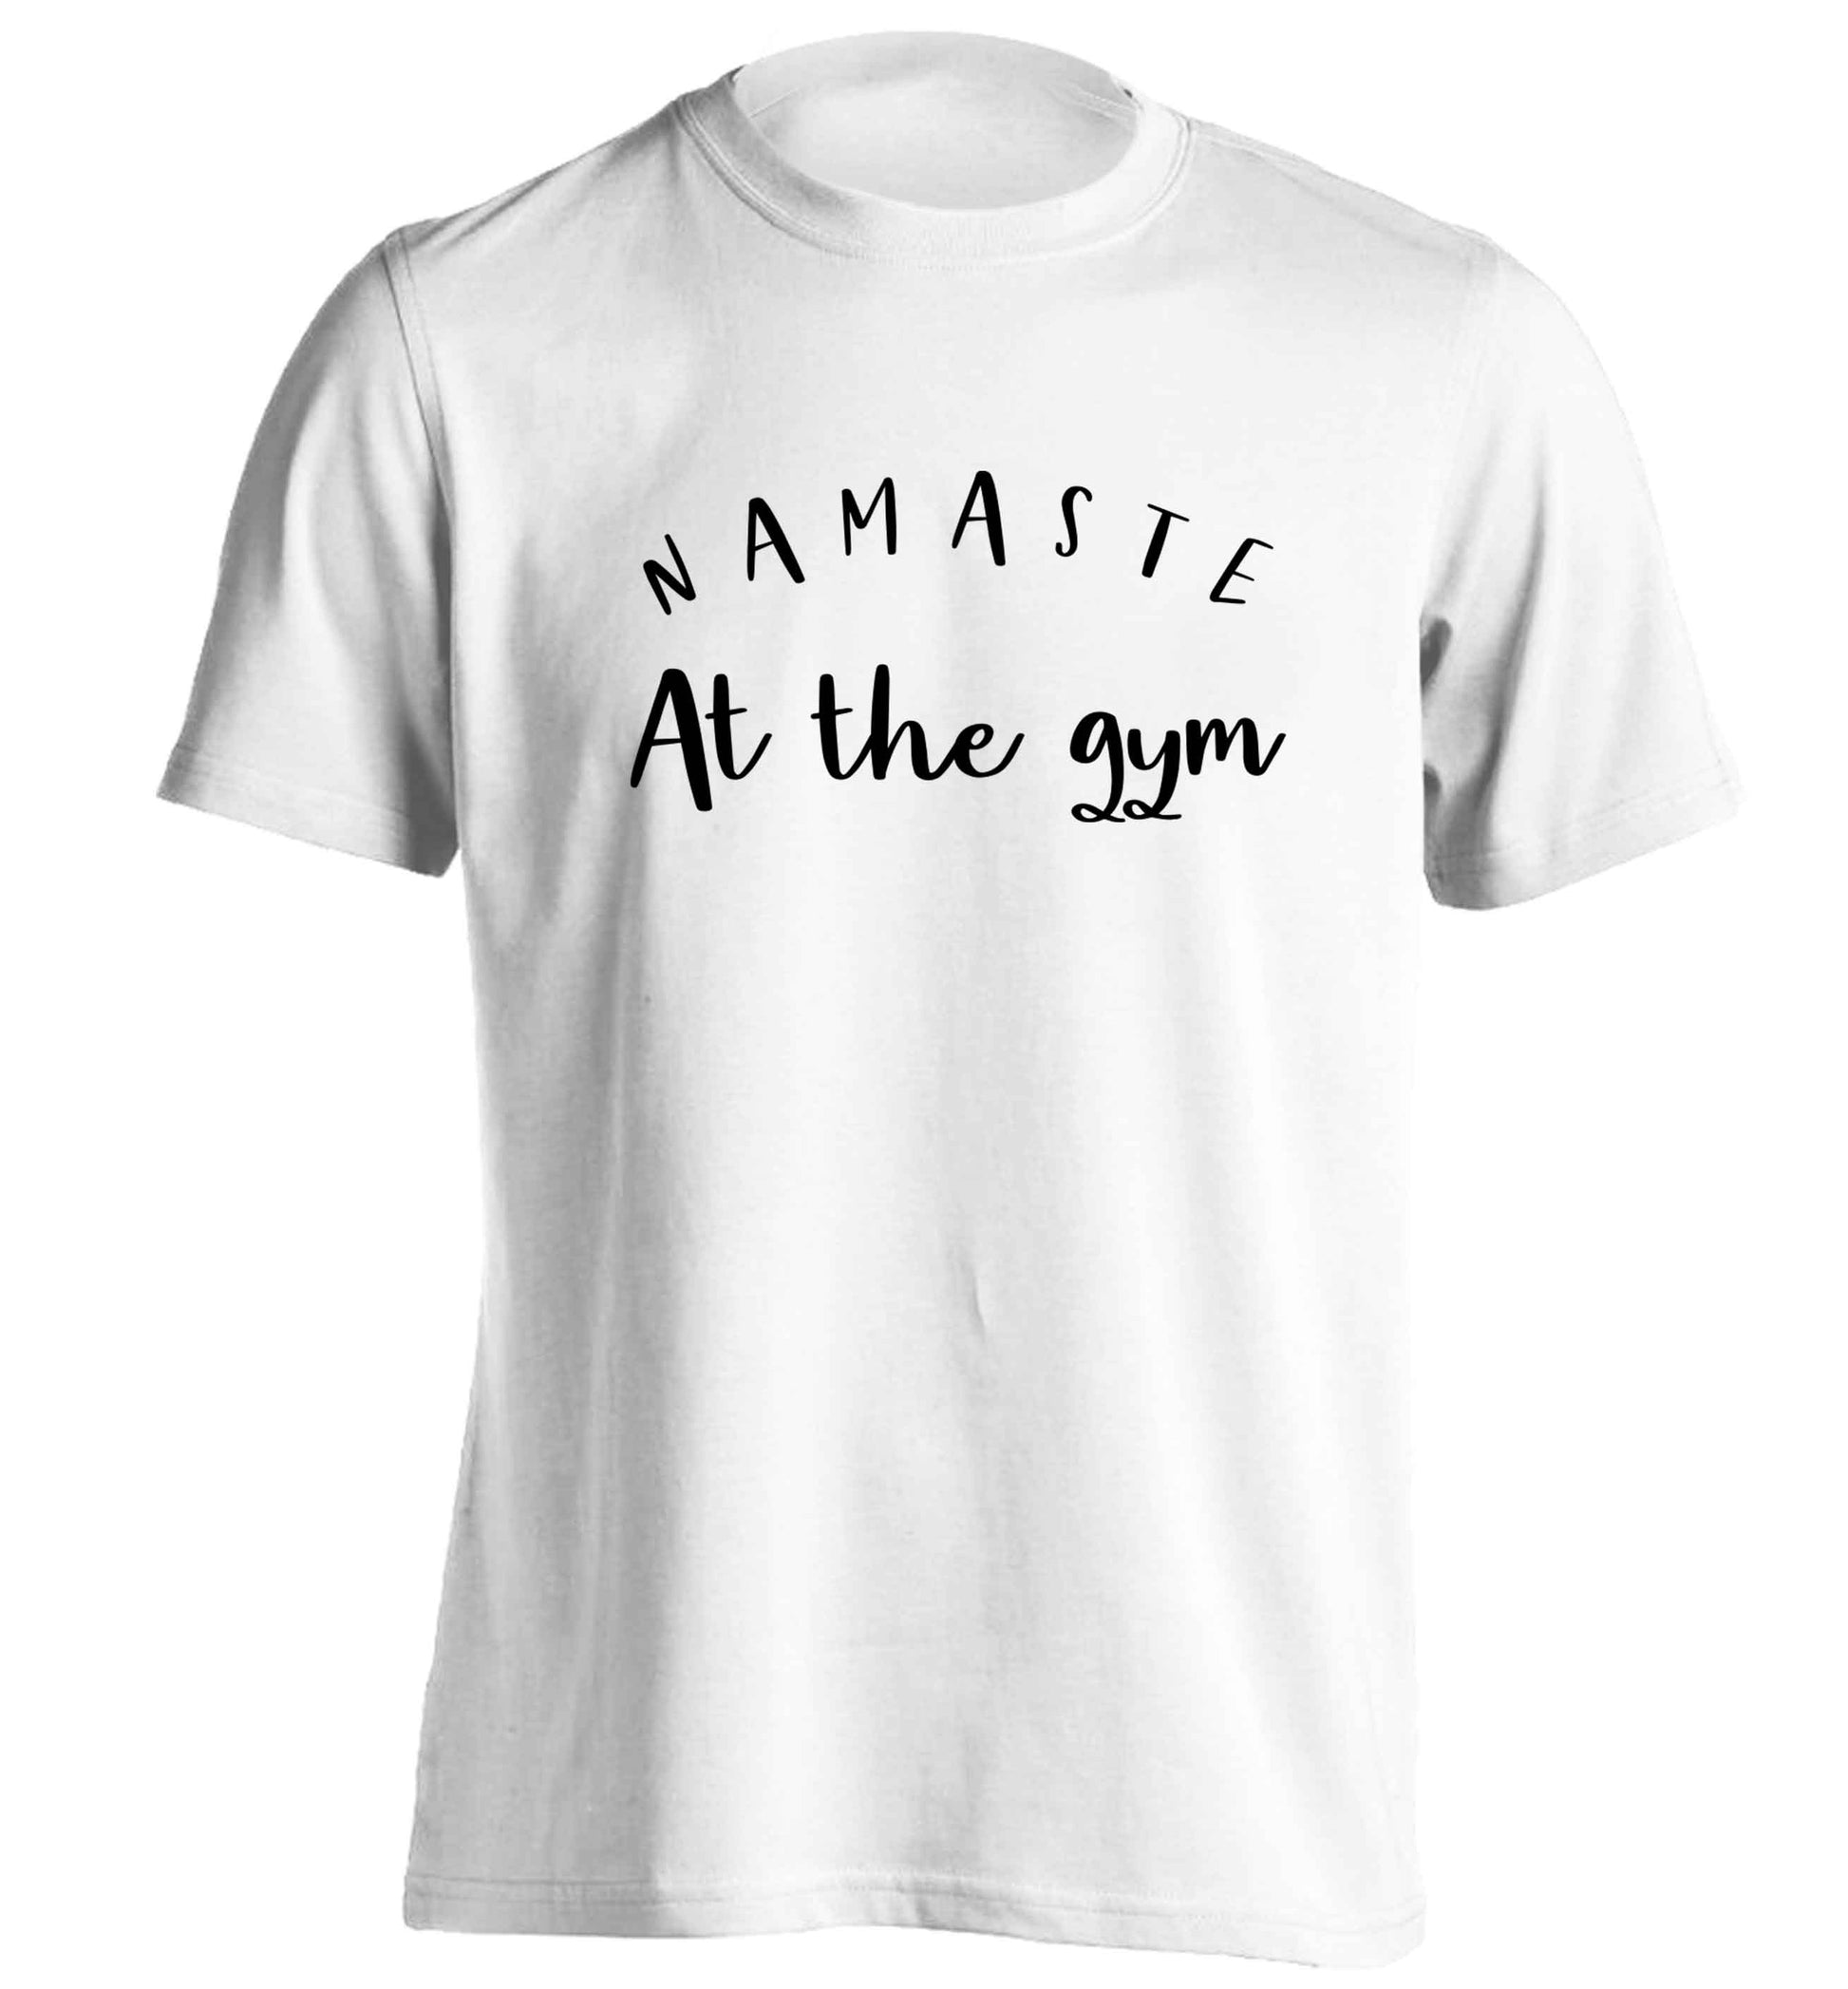 Namaste at the gym adults unisex white Tshirt 2XL